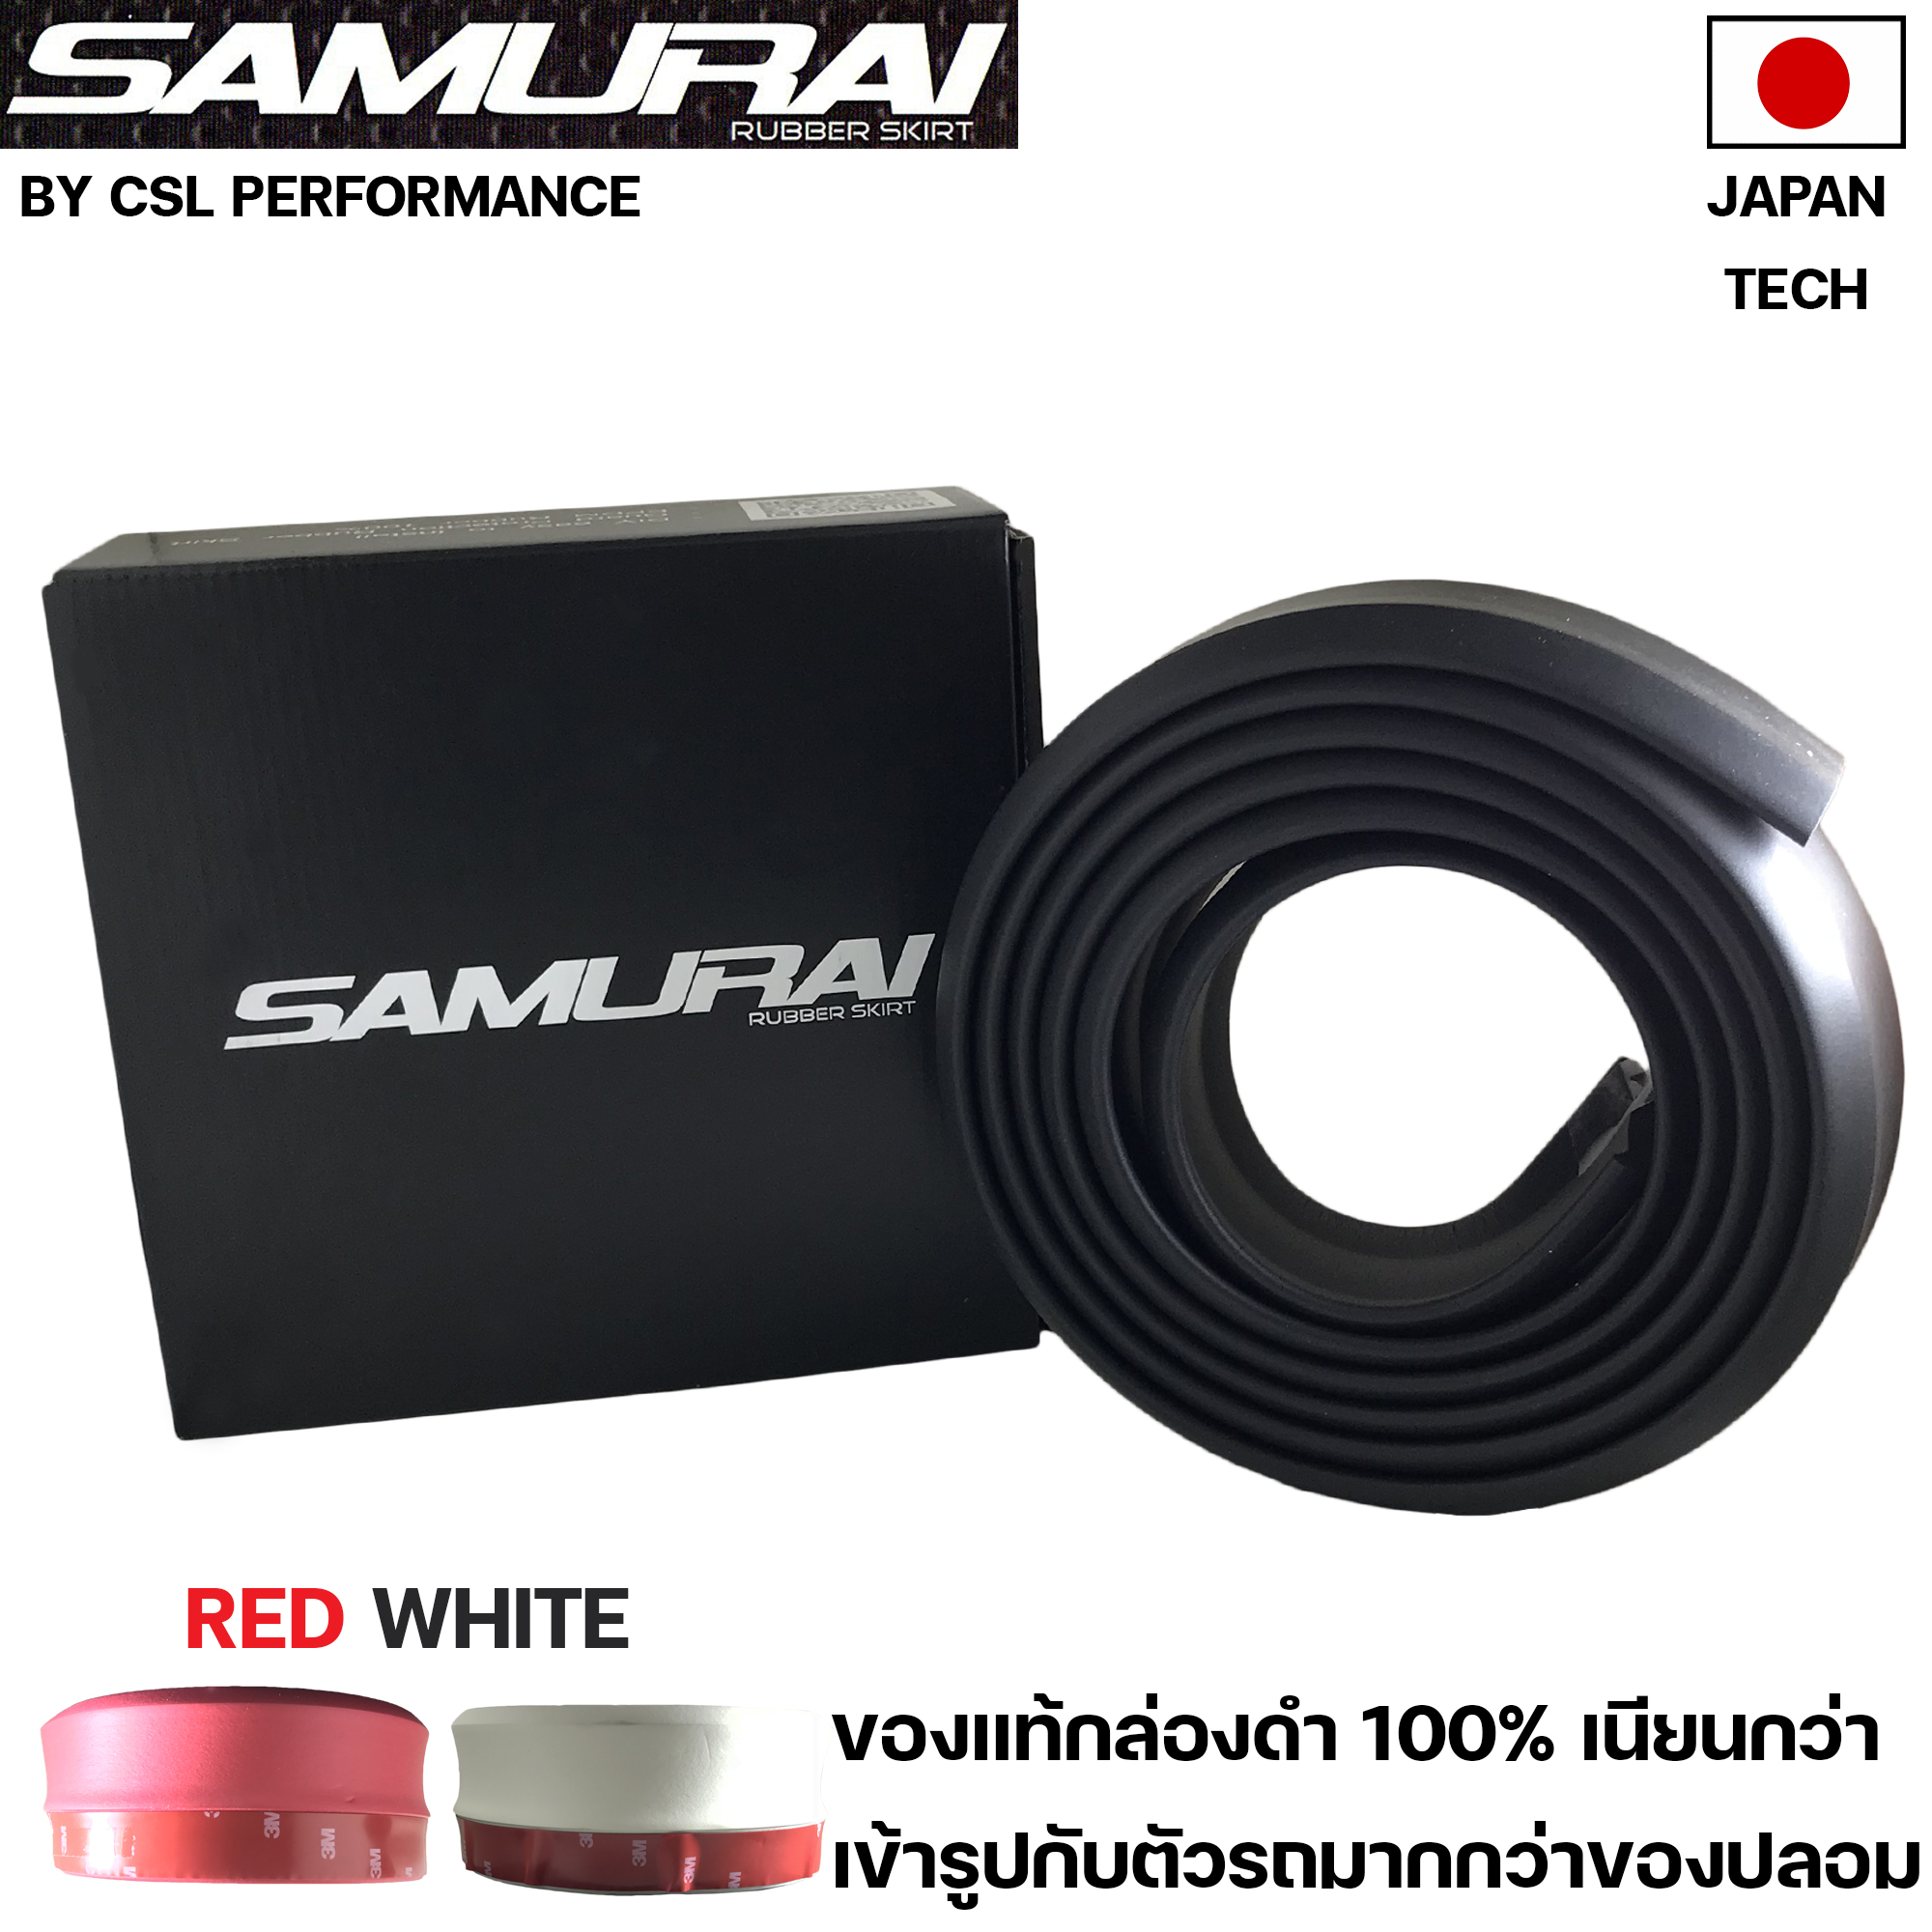 ลิ้นยาง Samurai 2.5 M งานญี่ปุ่นของเเท้กล่องดำ ติดตั้งได้กับรถทุกรุ่น มีสีดำ ขาว และ แดง (Rubber skirt)